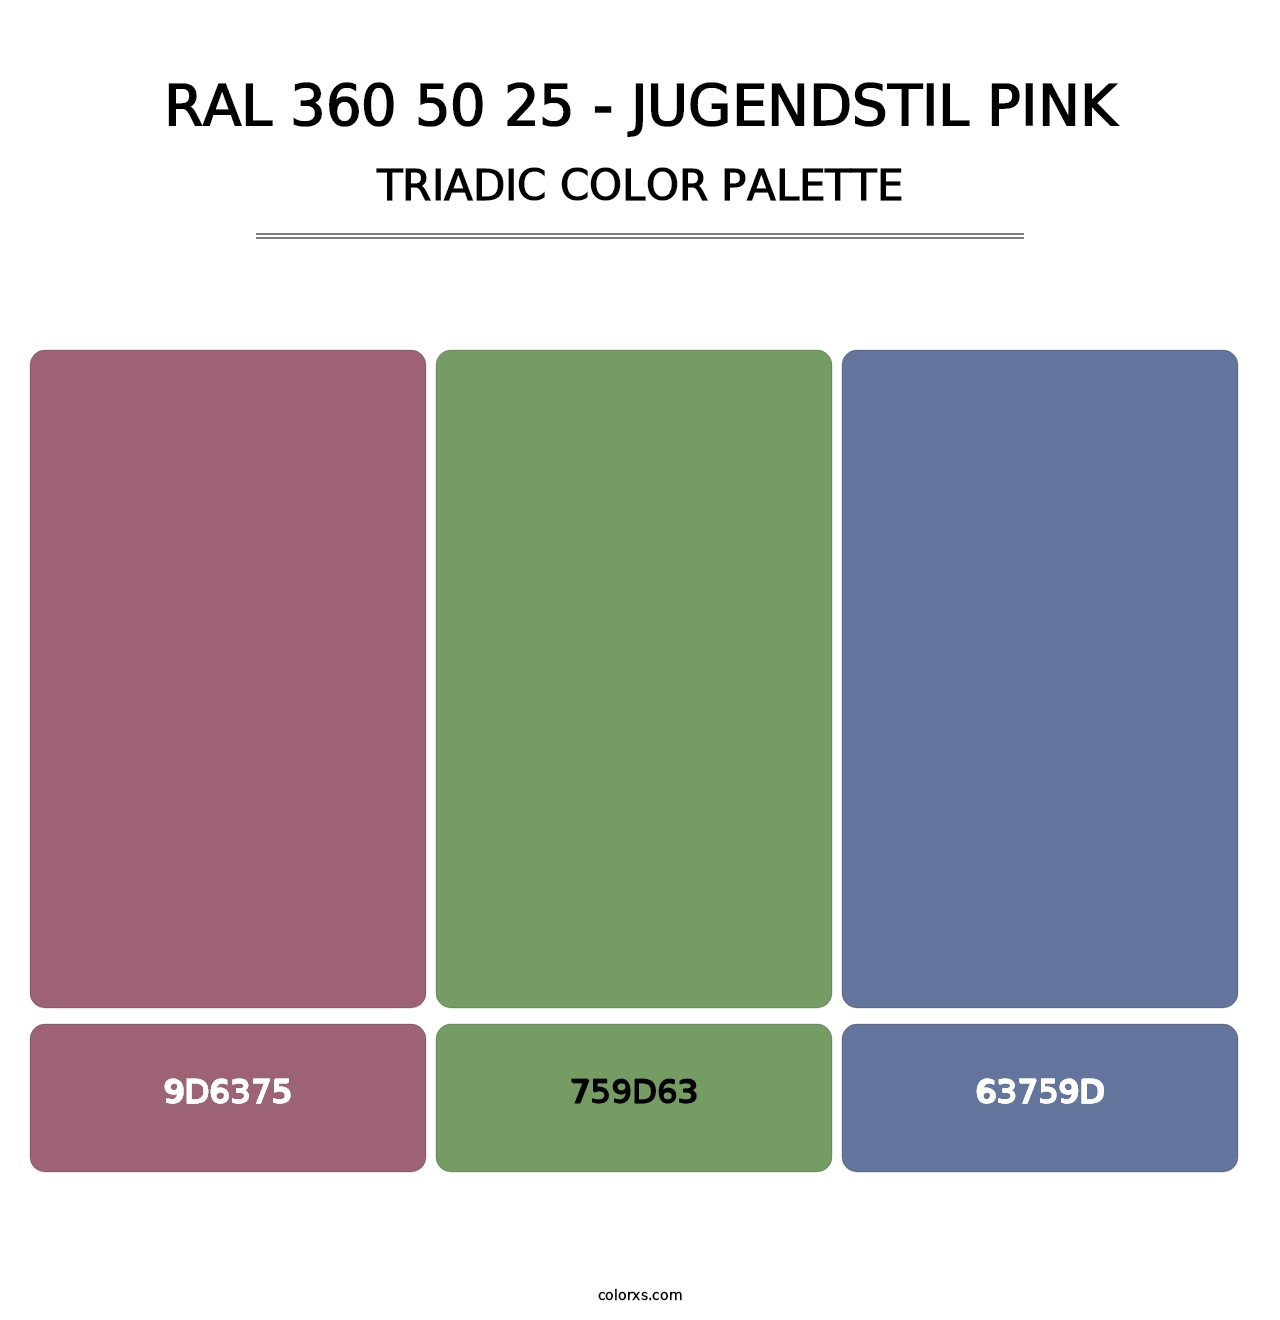 RAL 360 50 25 - Jugendstil Pink - Triadic Color Palette